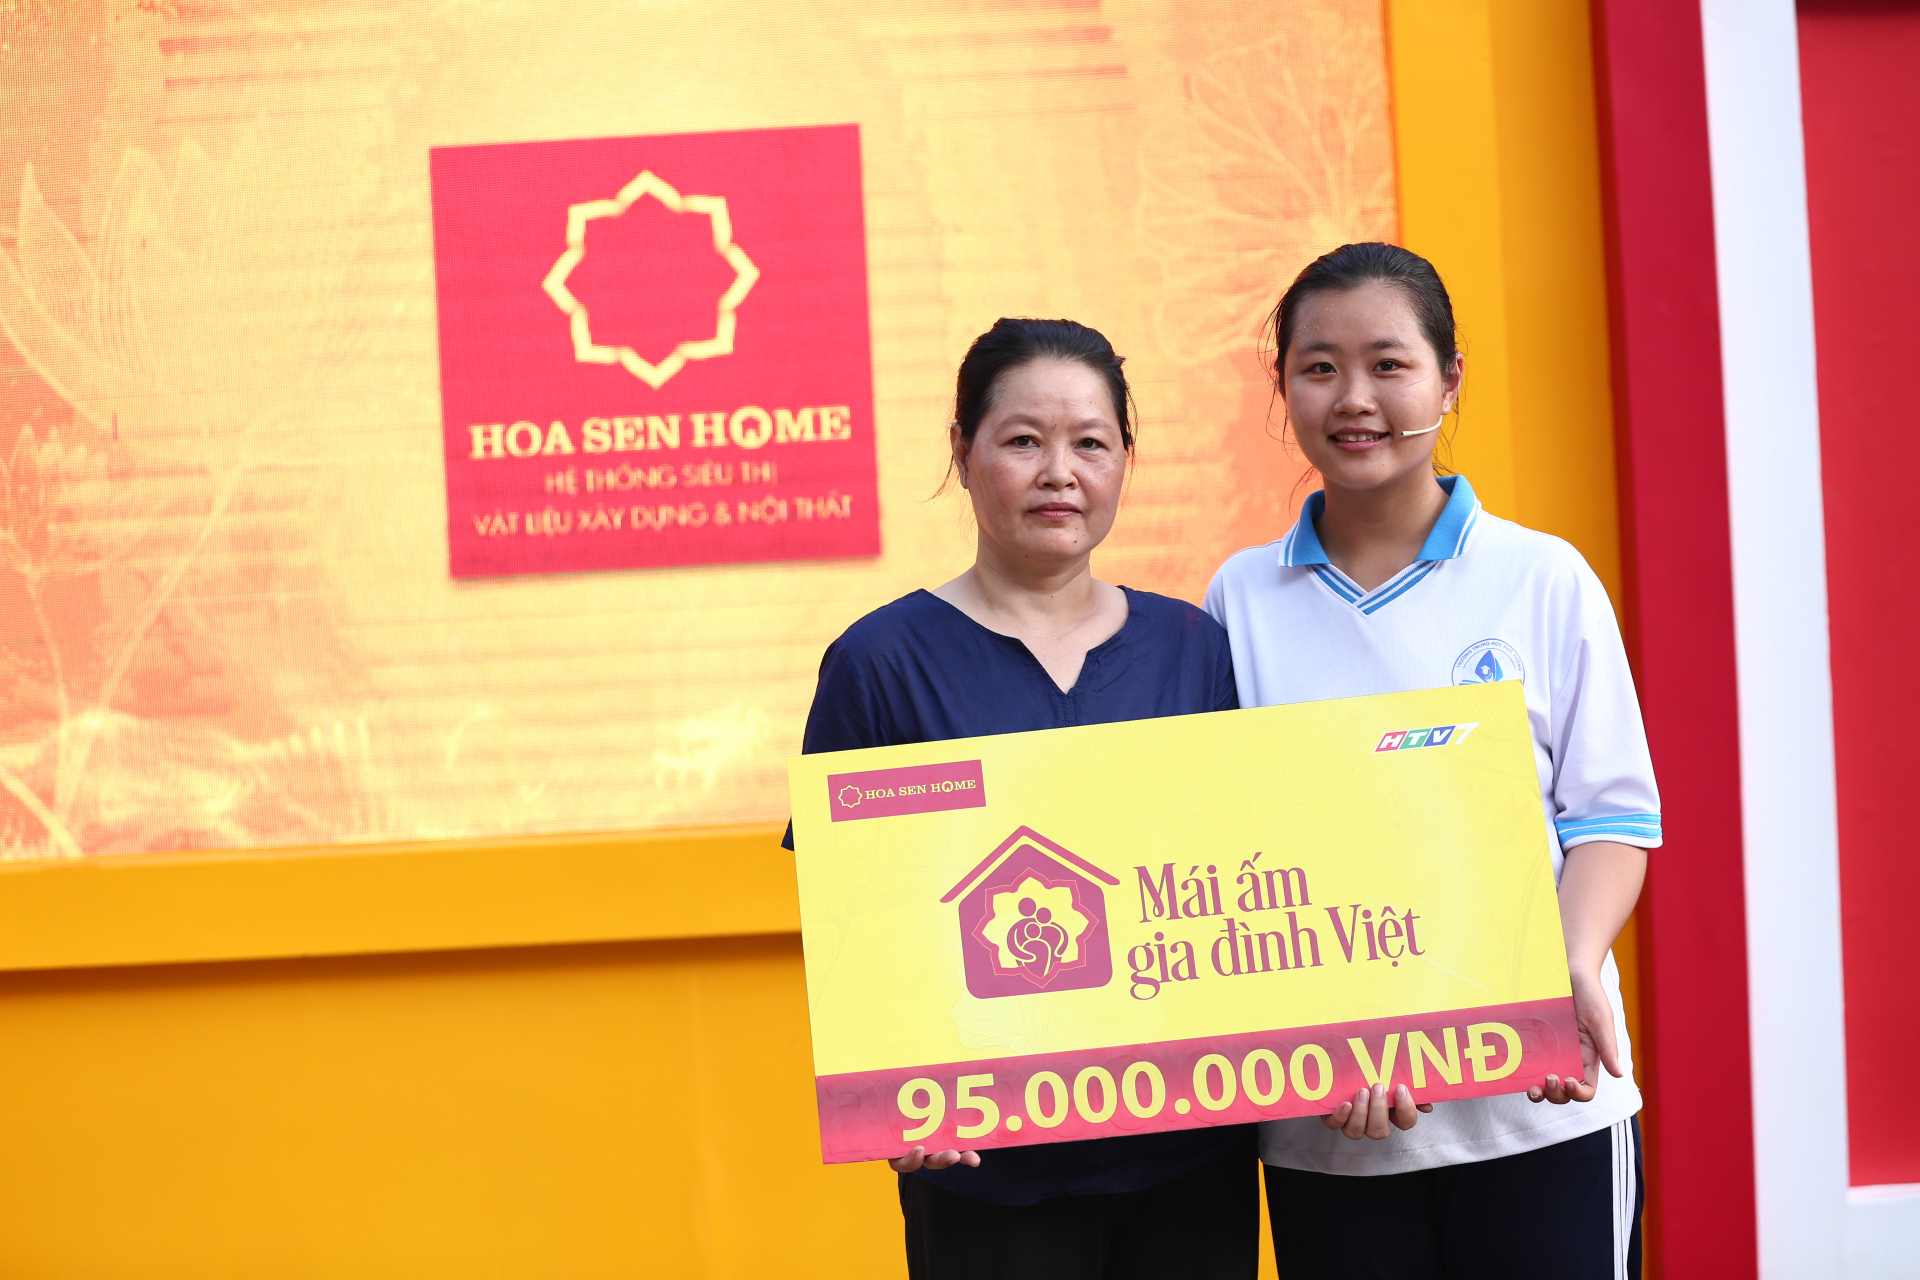 Bước vào vòng rút bảng tiền thưởng, gia đình em Lê Huỳnh Bảo Nghi nhận tổng giải thưởng là 95 triệu đồng sau 2 lần rút. MC Quyền Linh, hai nghệ sĩ và gia đình em Nghi vỡ òa hạnh phúc với số tiền thưởng quá lớn.